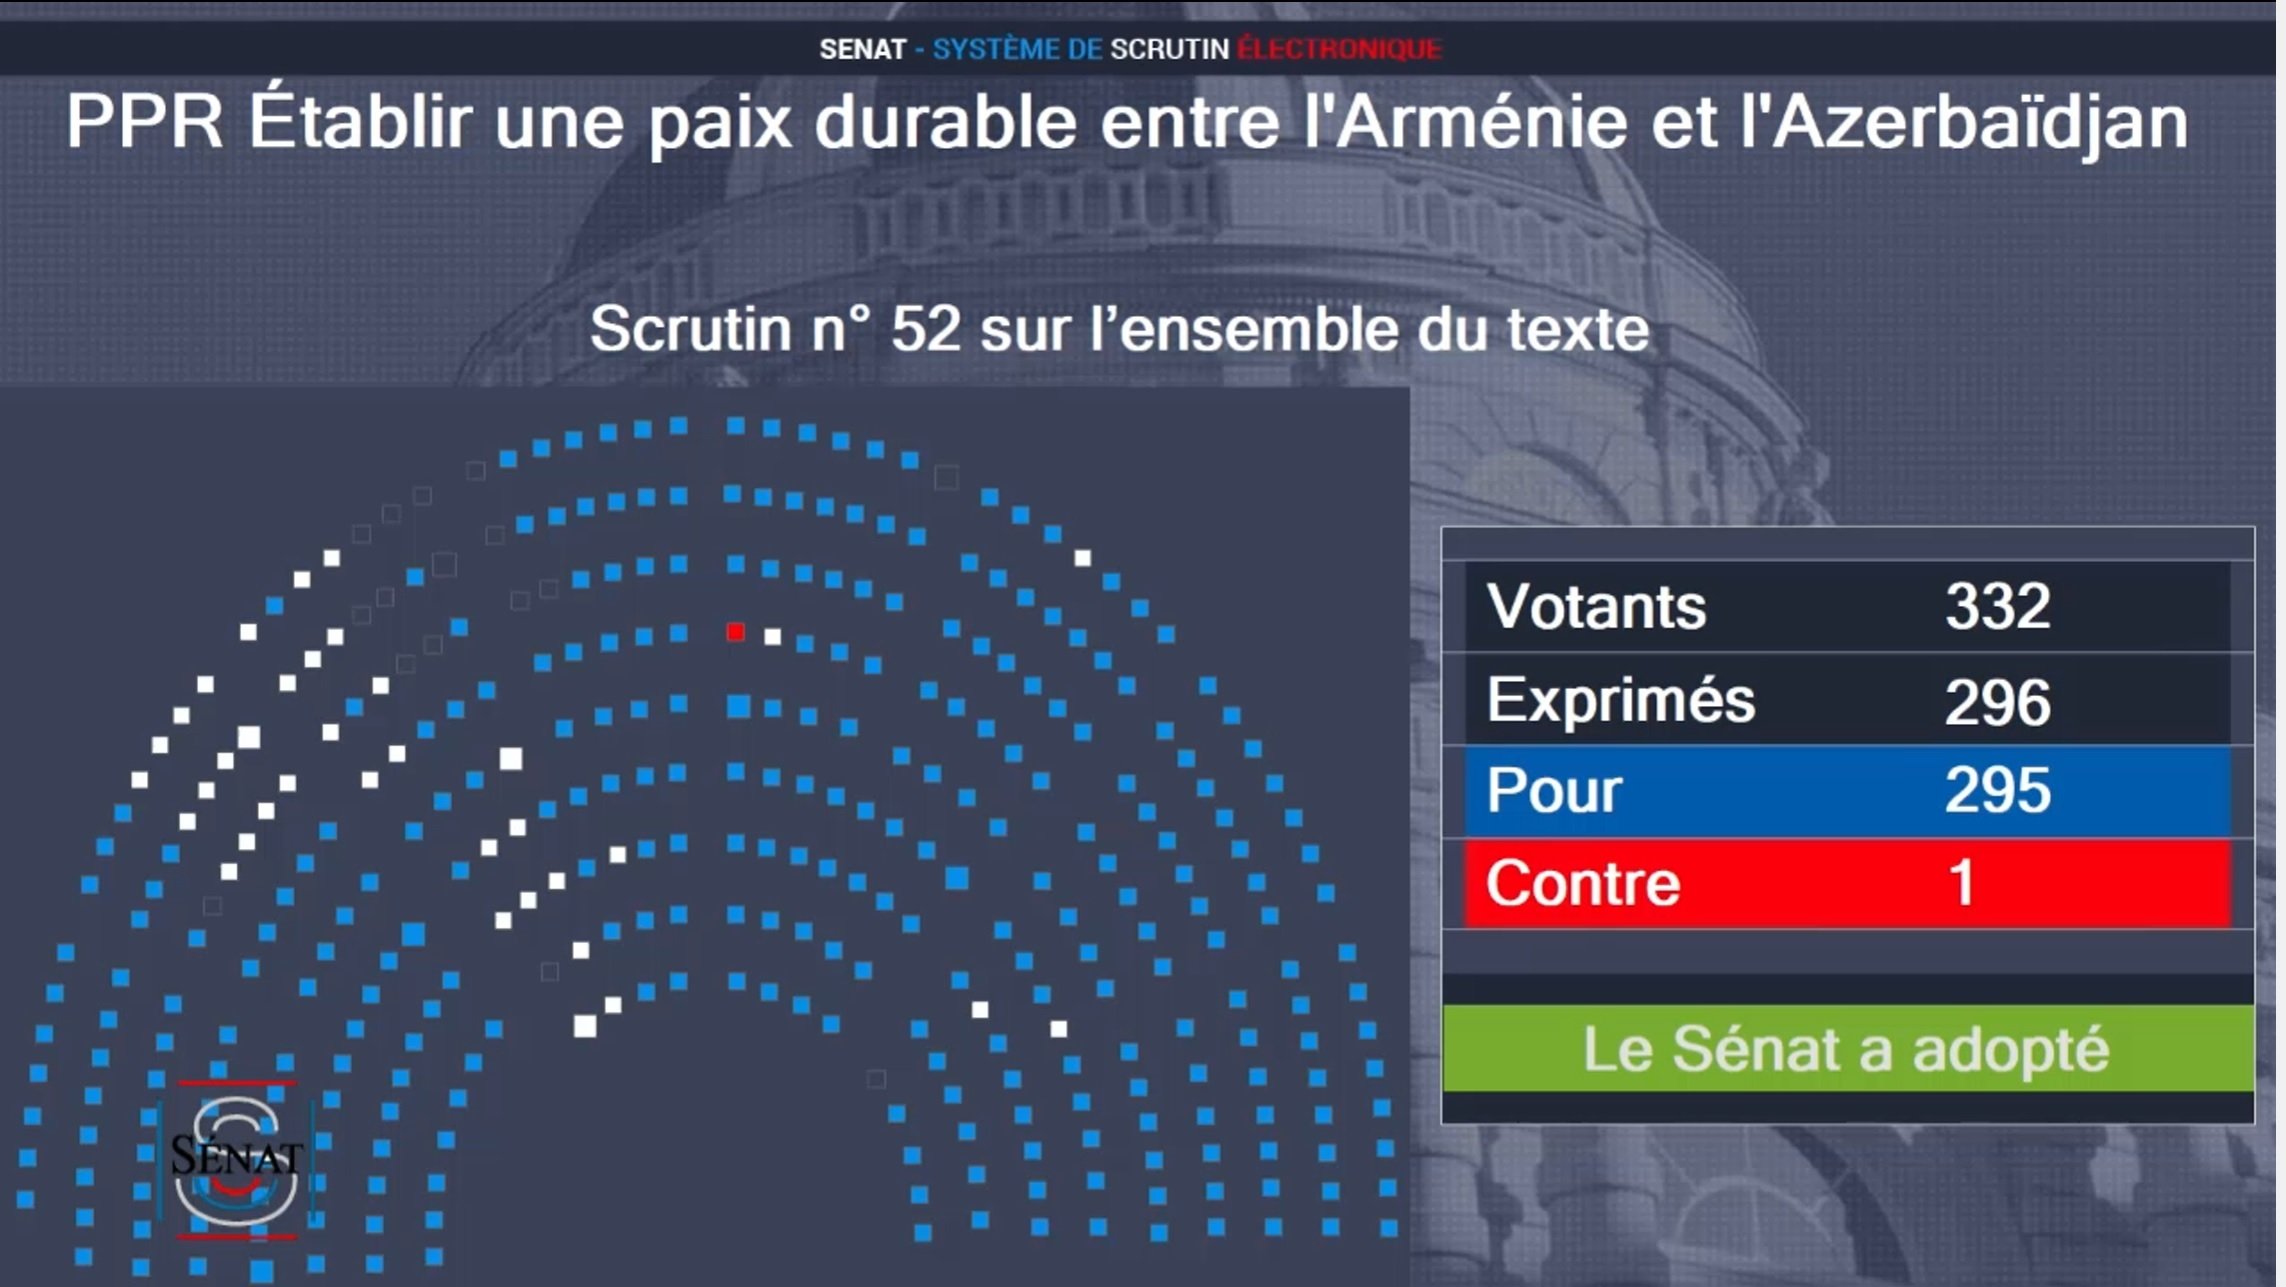 Ֆրանսիայի Սենատը 295 կողմ, 1 դեմ ձայներով ընդունեց Հայաստանին աջակցող և Ադրբեջանի նկատմամբ պատժմիջոցներ առաջարկող բանաձևը